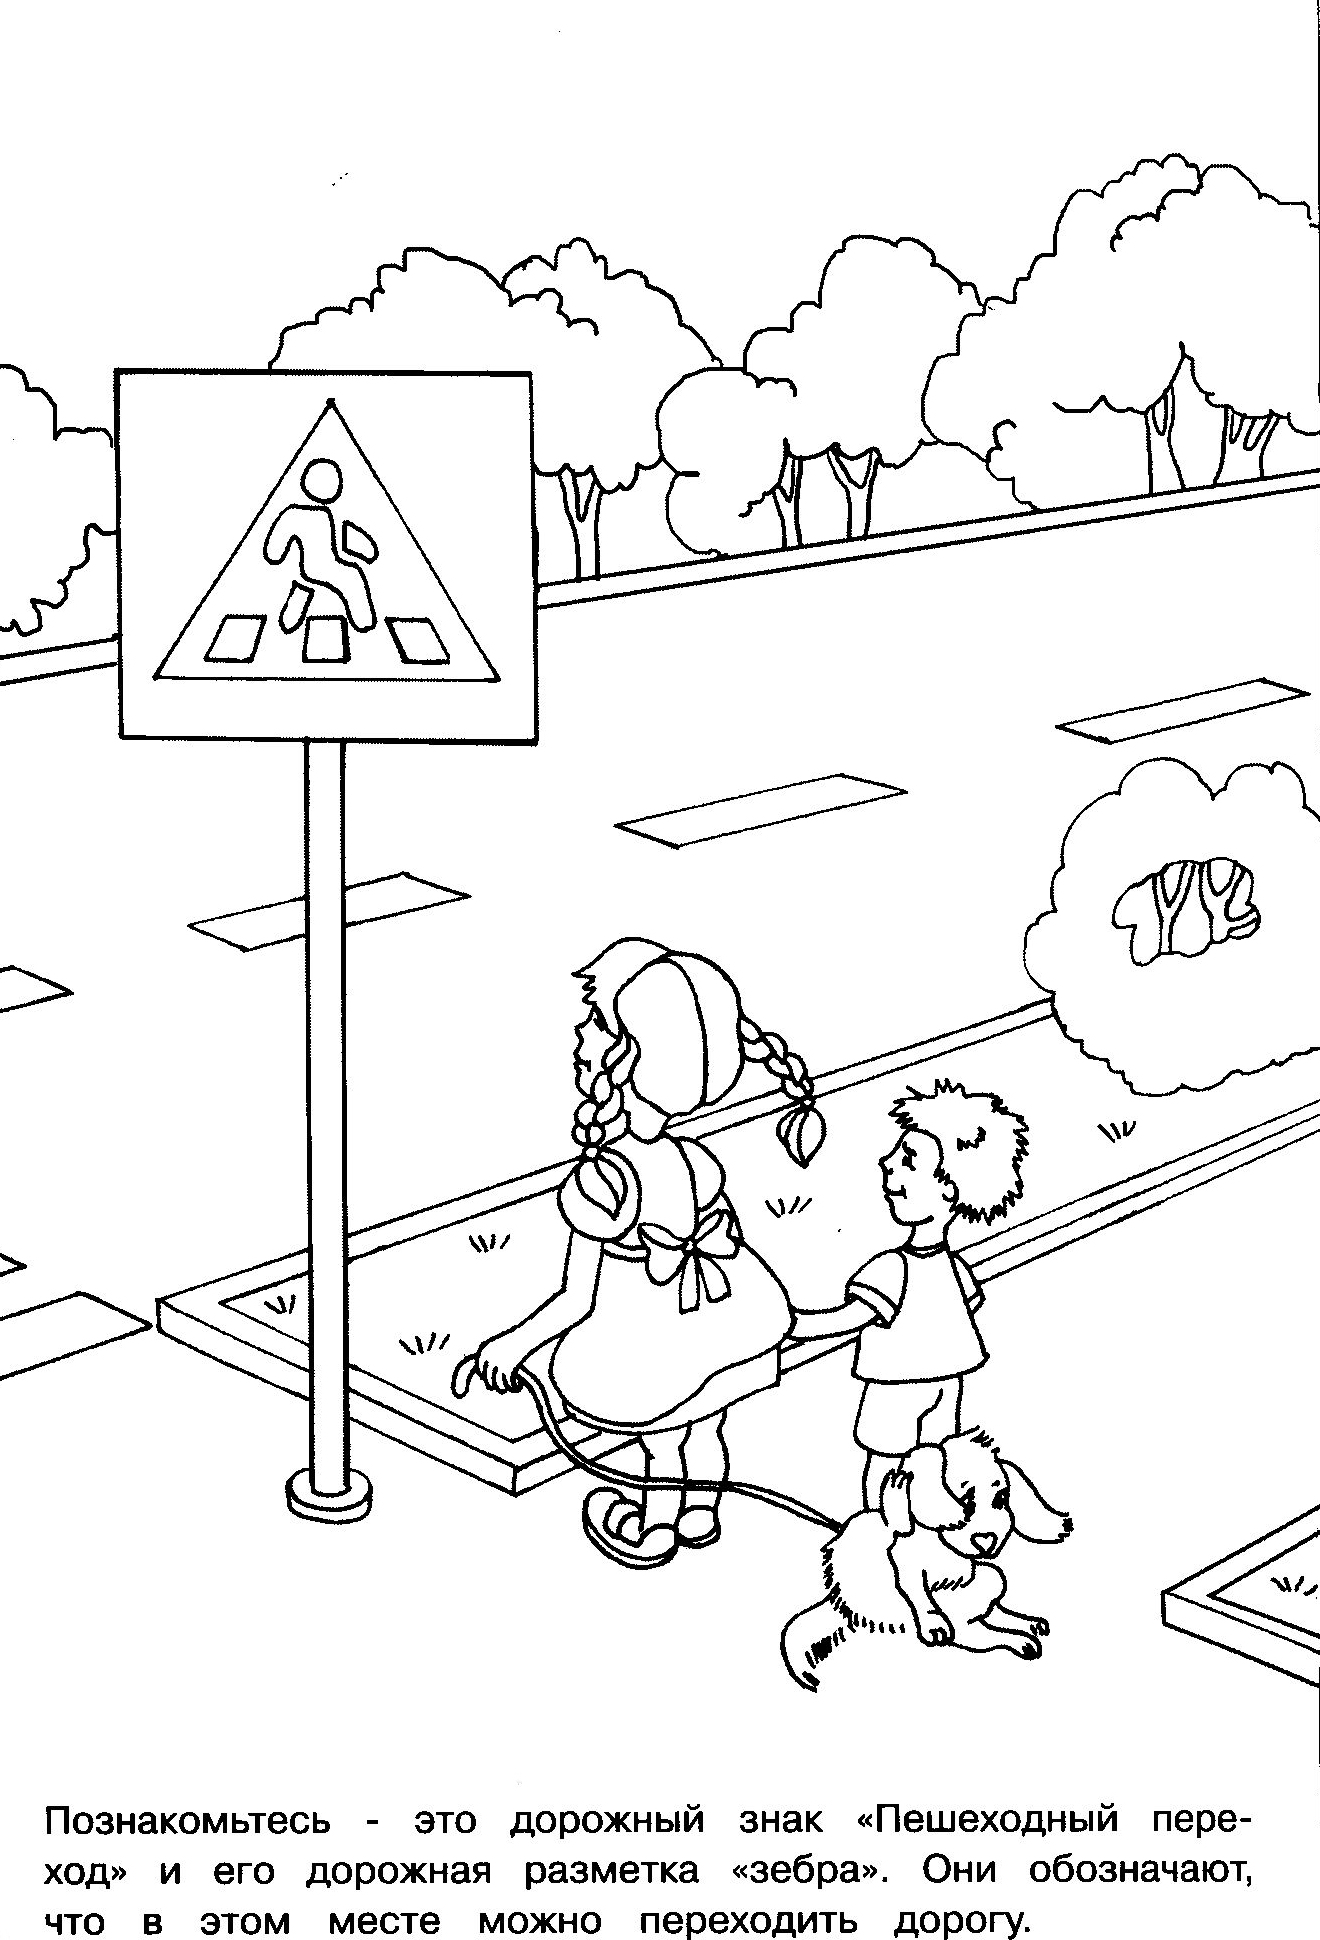 Знак пешеходный переход раскраска – Дорожные Знаки Для Детей